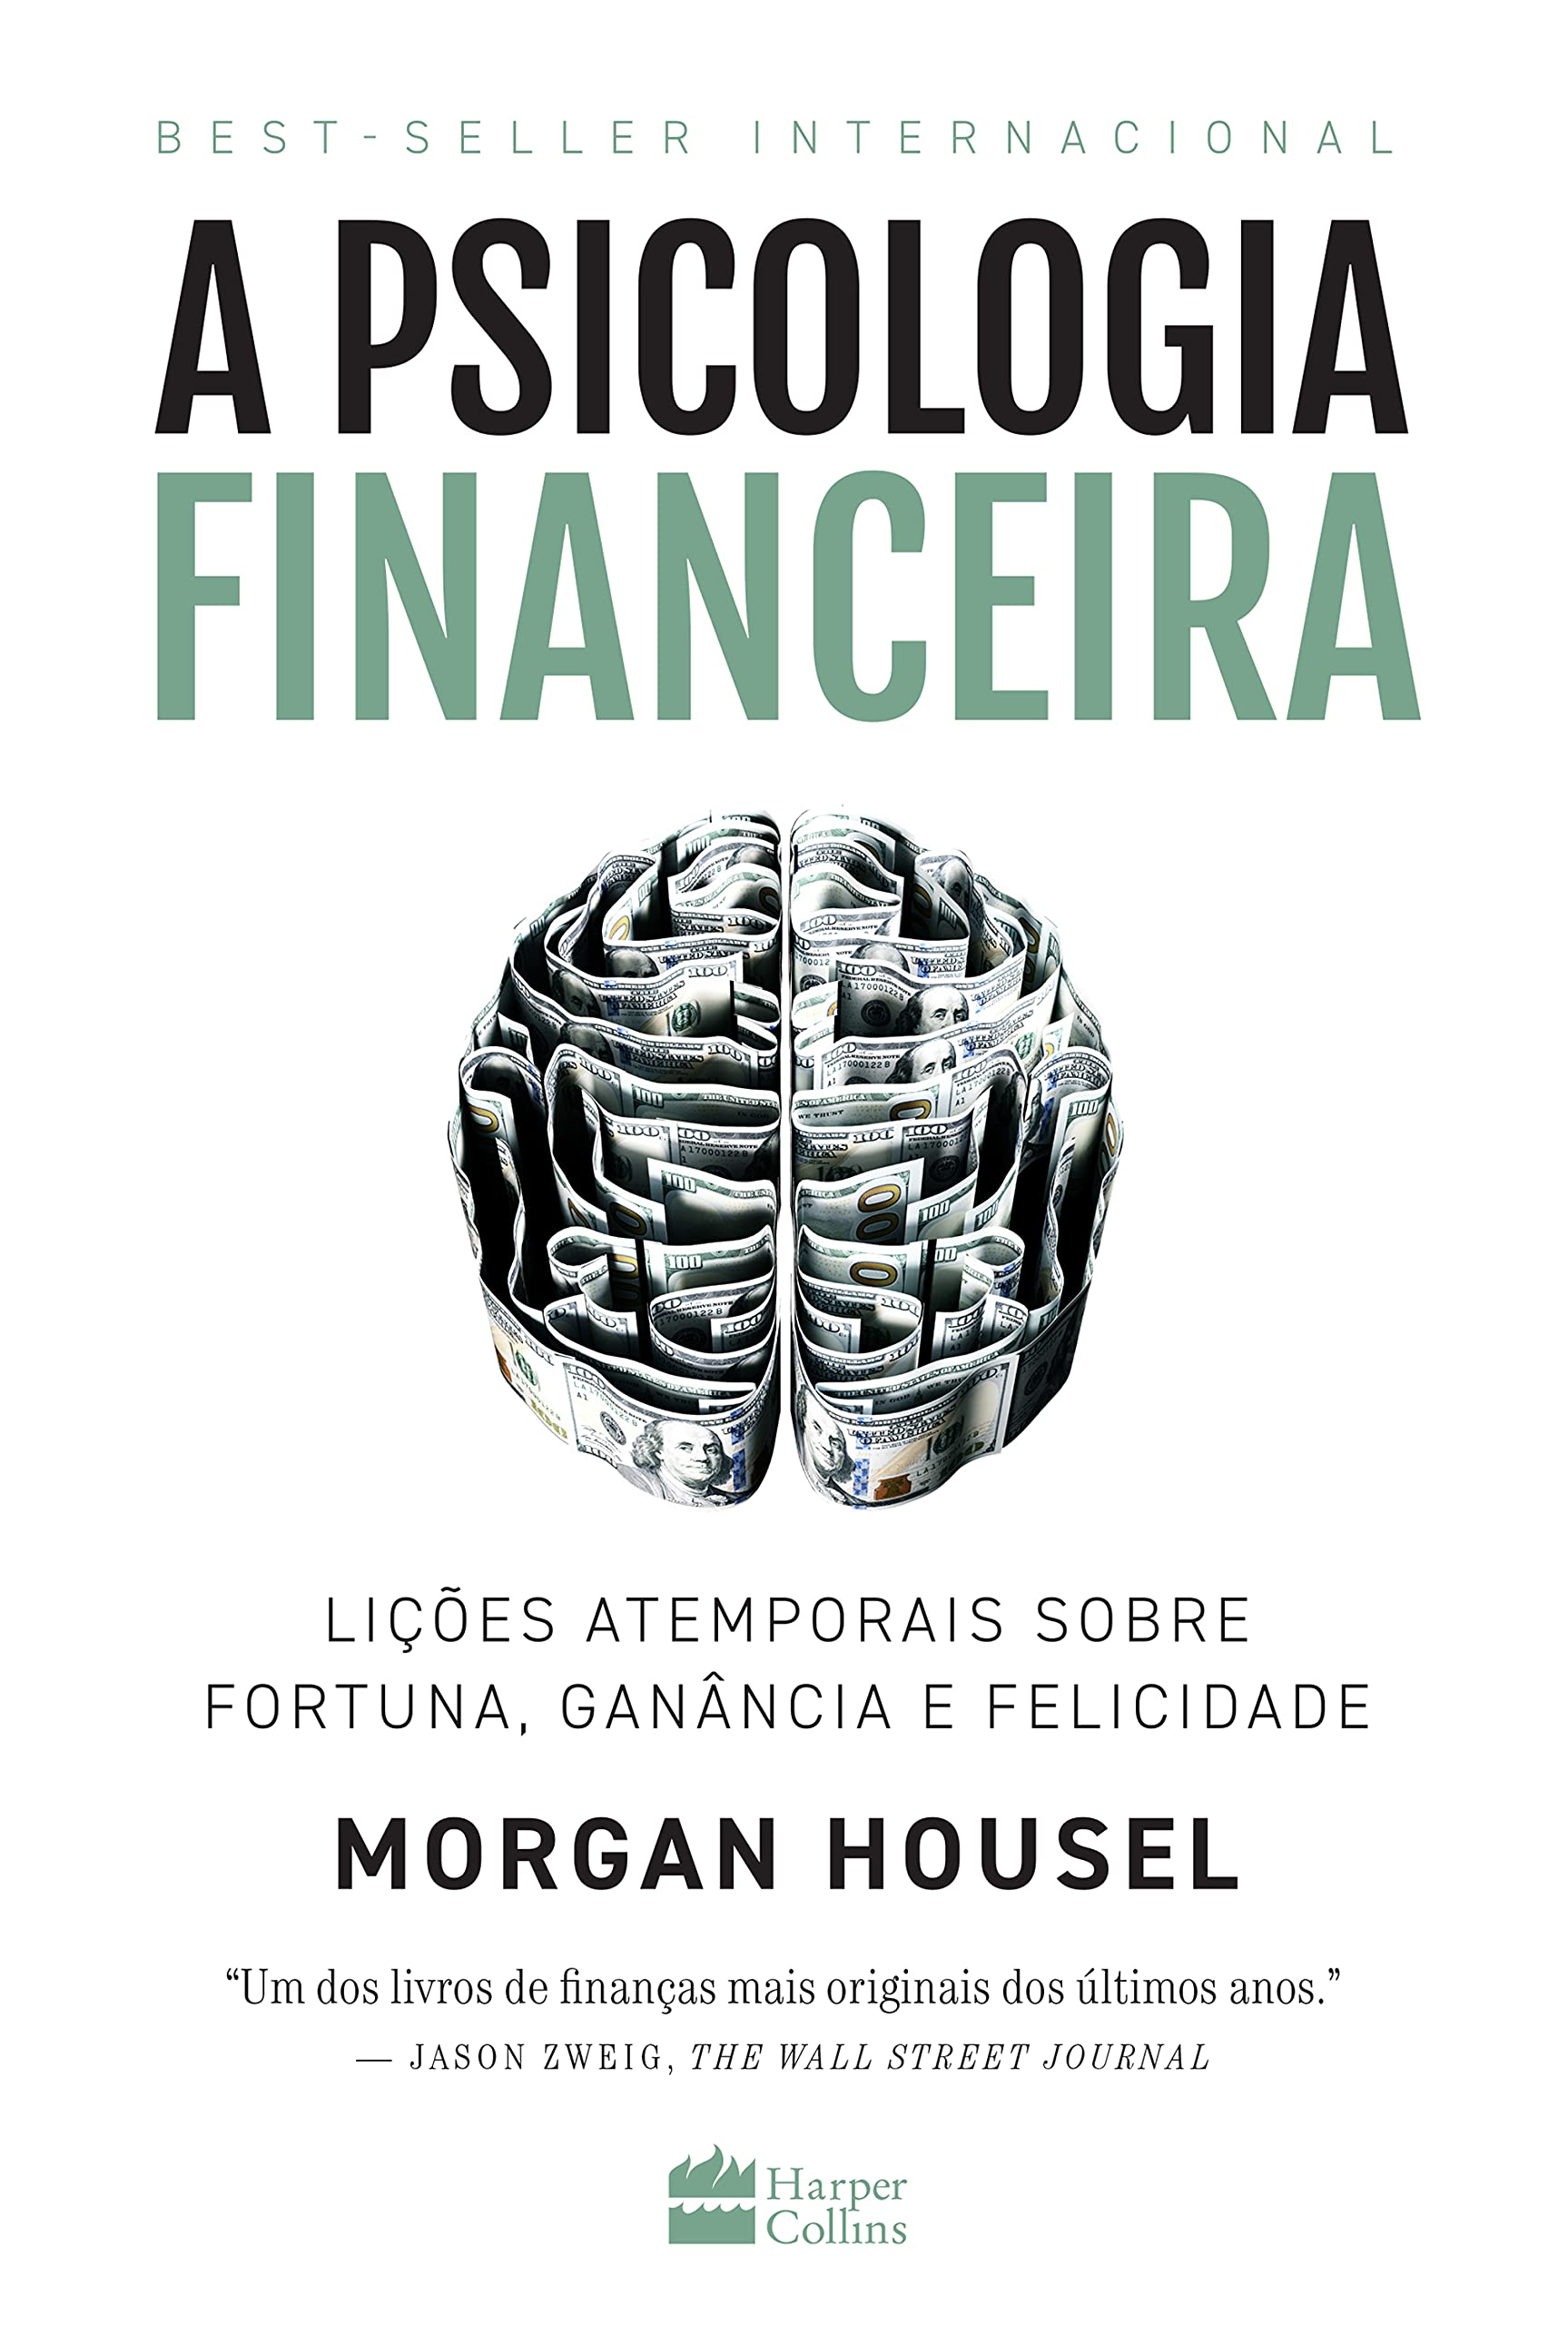 Resumo A Psicologia Financeira